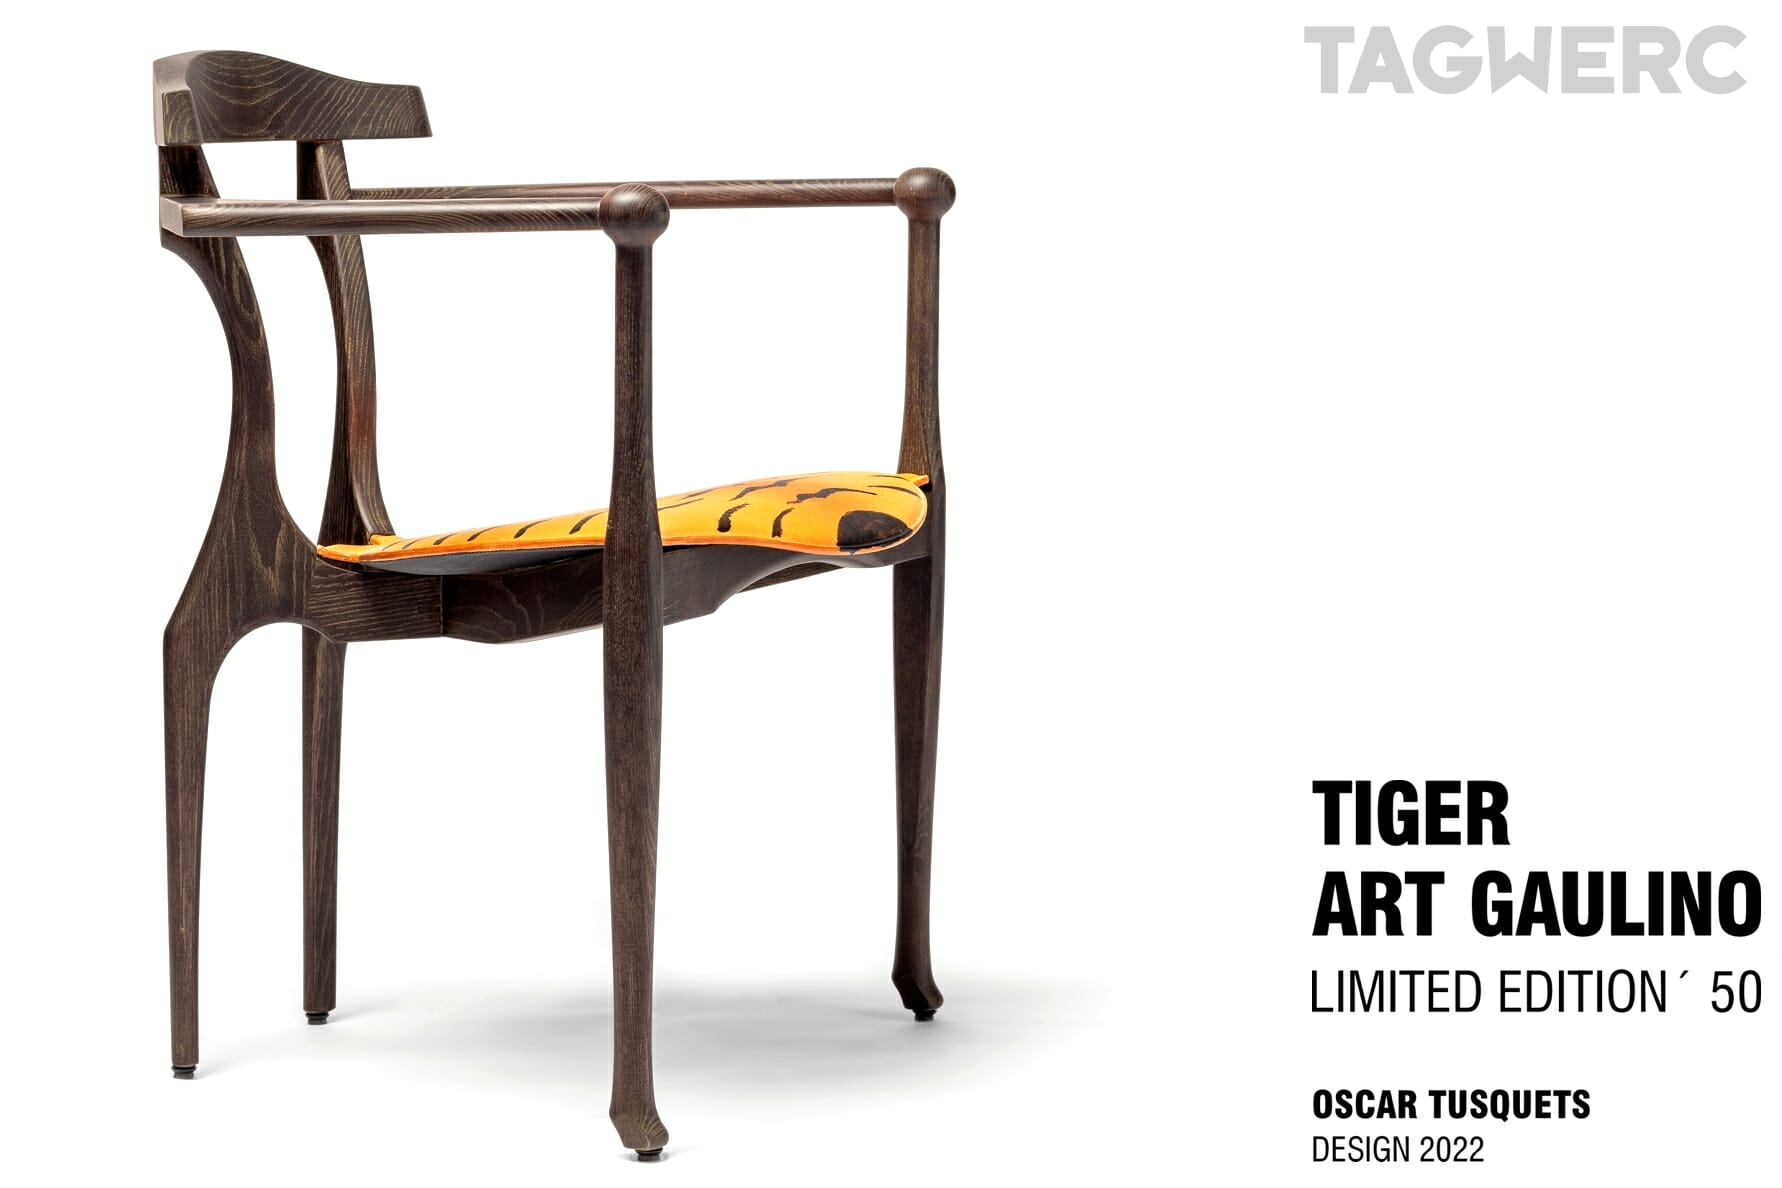 tiger-art-gaulino-armchair_bd-barcelona_oscar-tusquets_2022___tagwerc_____2